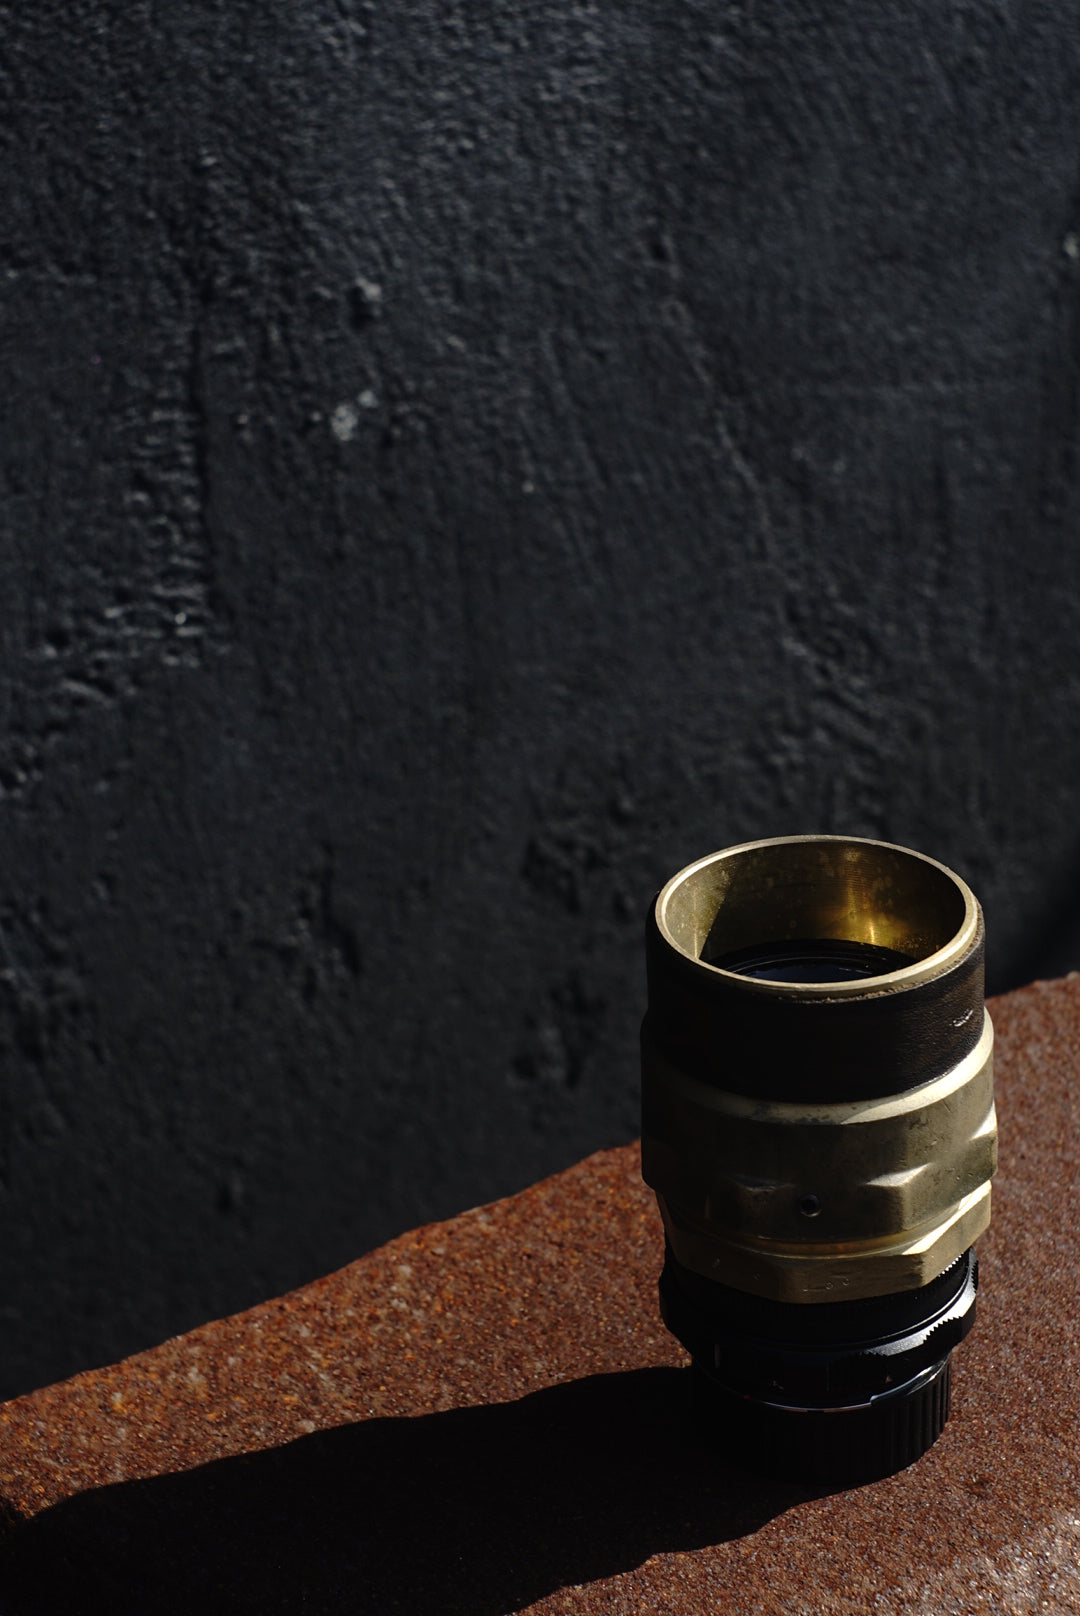 侘 50mm f/1.4 Leica M MOUNT [ Reo Ma Edition ]